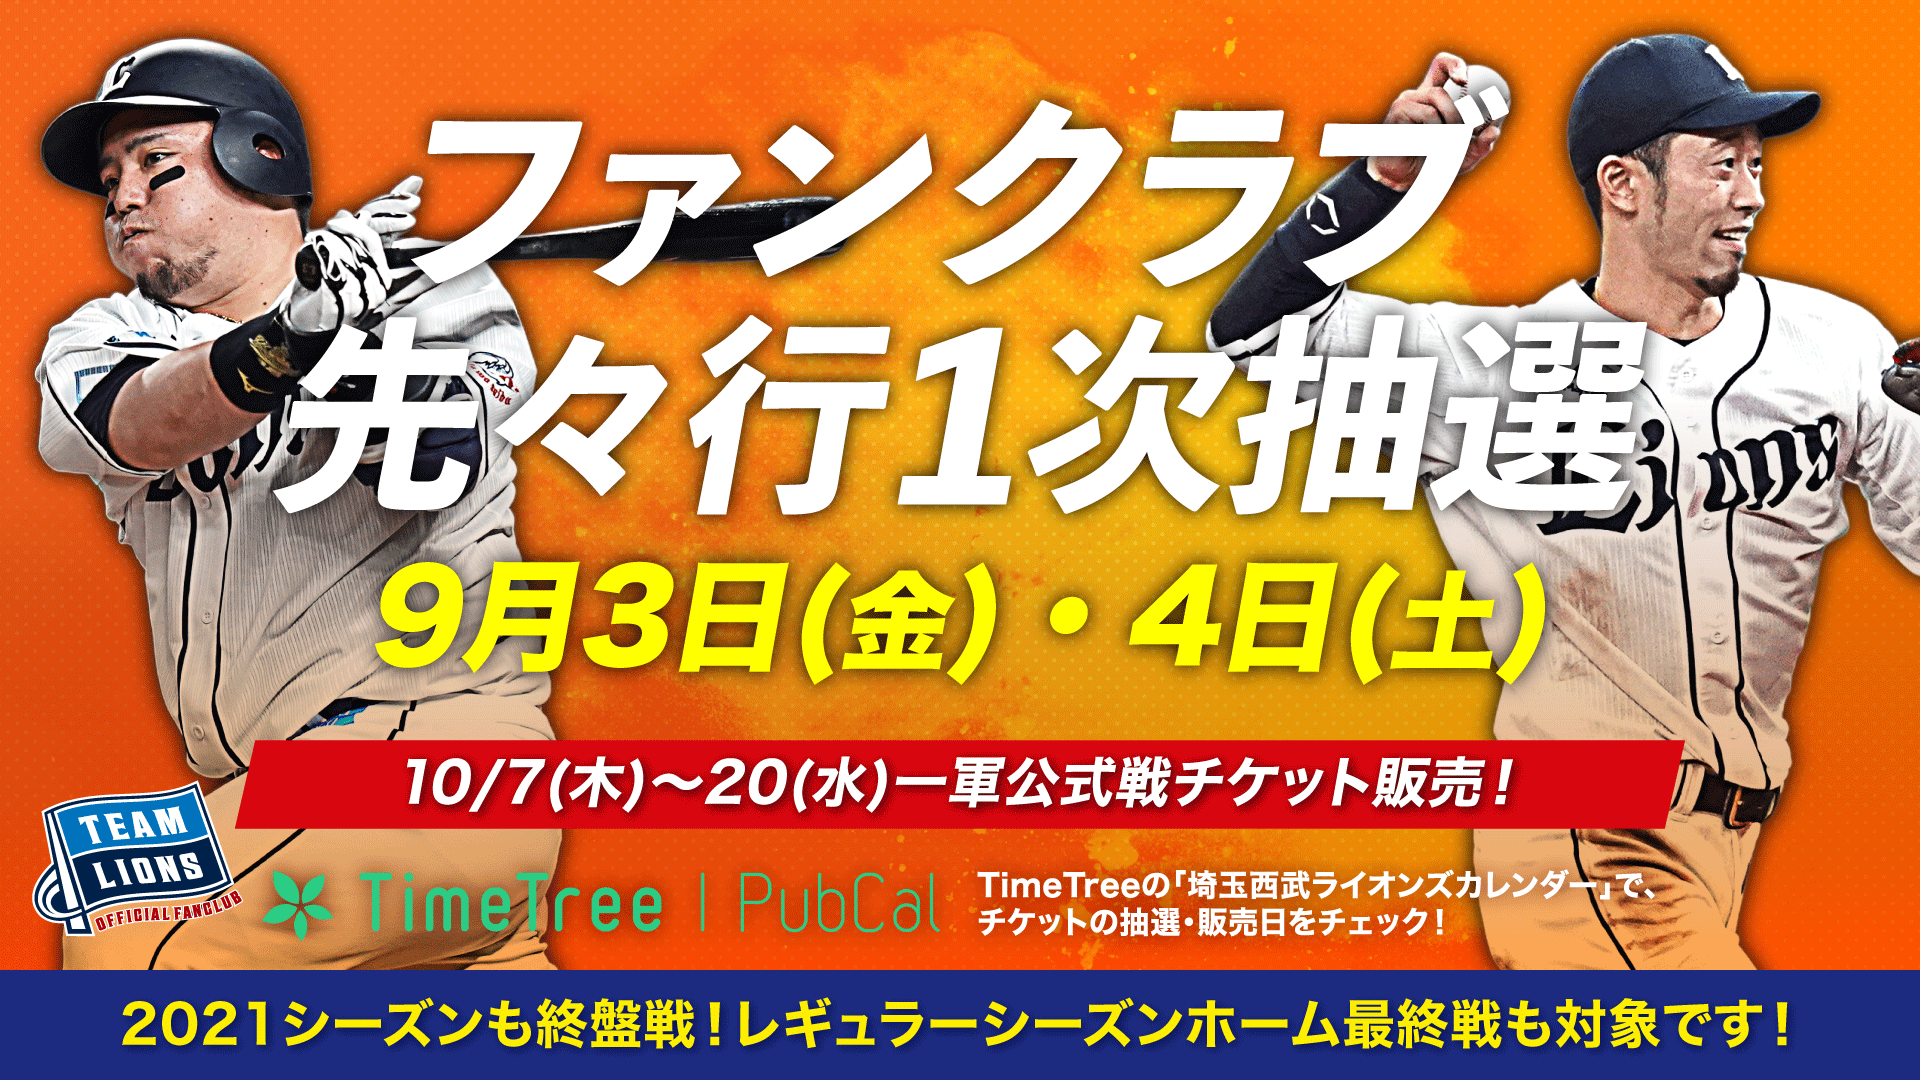 9月23日 埼玉西武ライオンズ  チケット4枚(連番・通路側含む)